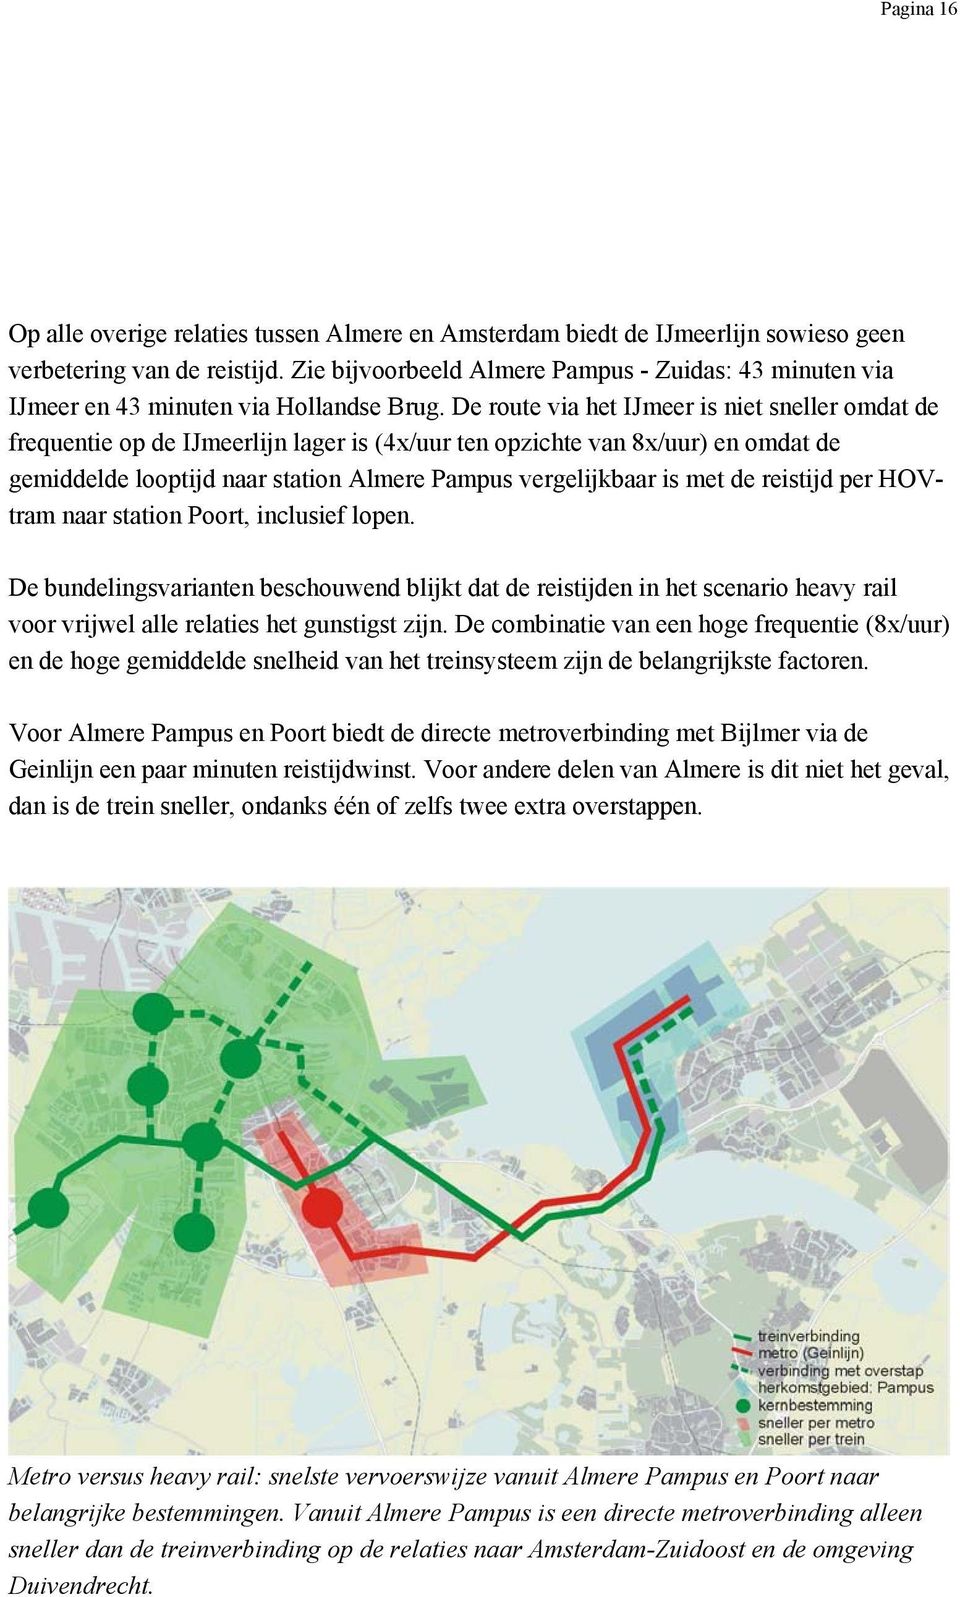 De route via het IJmeer is niet sneller omdat de frequentie op de IJmeerlijn lager is (4x/uur ten opzichte van 8x/uur) en omdat de gemiddelde looptijd naar station Almere Pampus vergelijkbaar is met